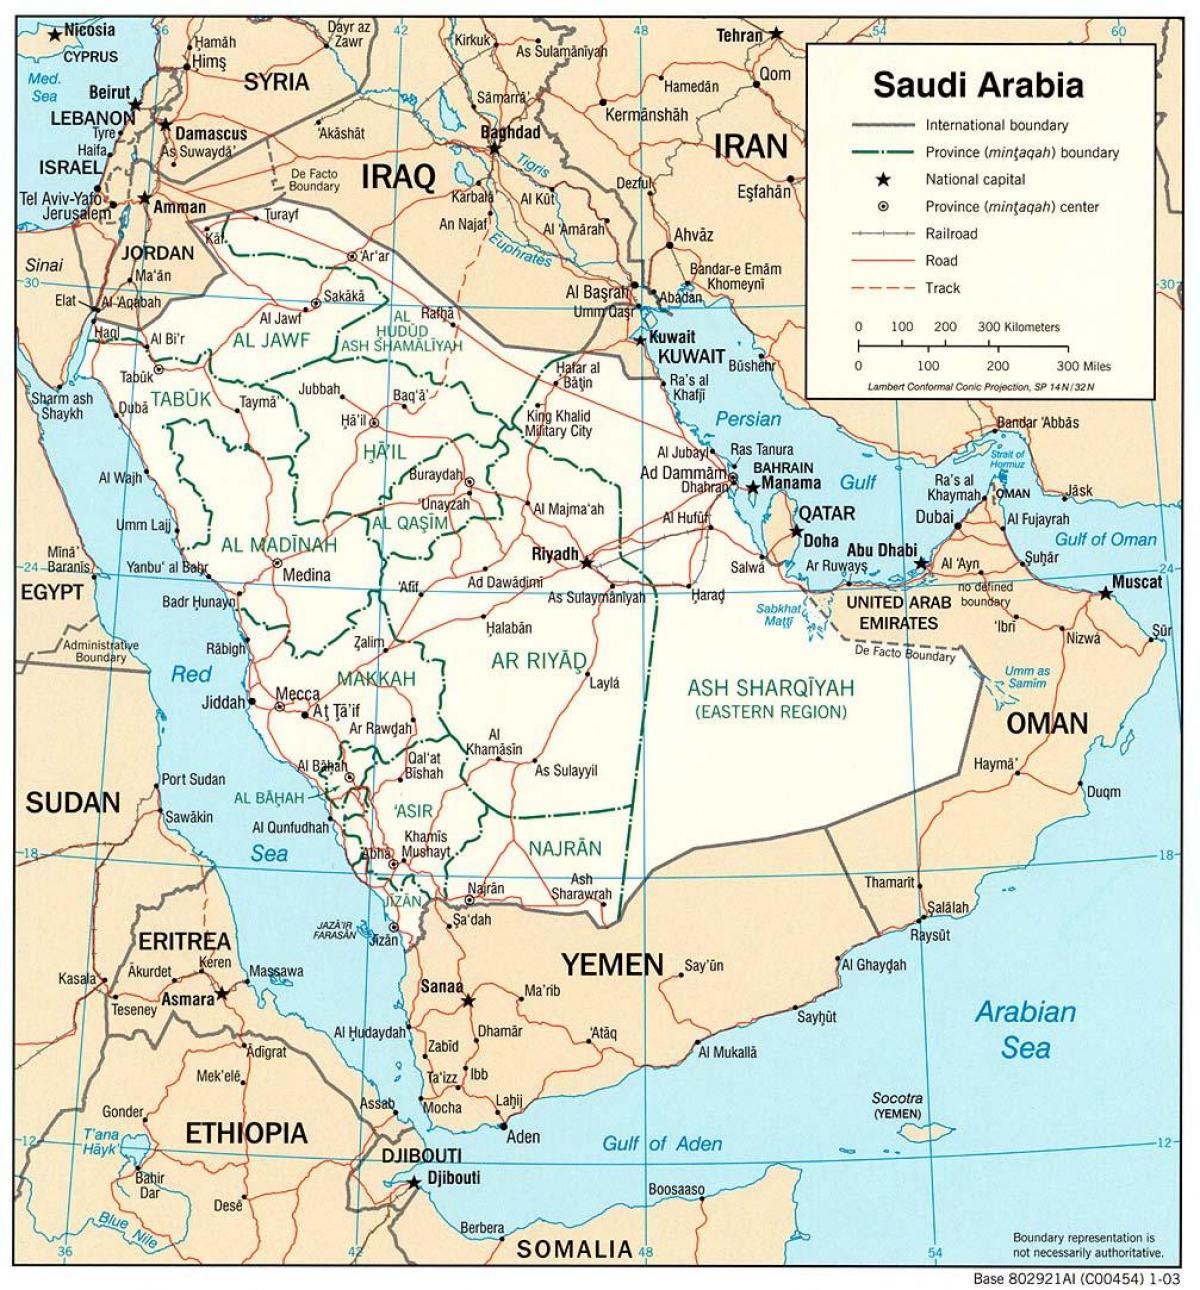 સાઉદી અરેબિયા સંપૂર્ણ નકશો